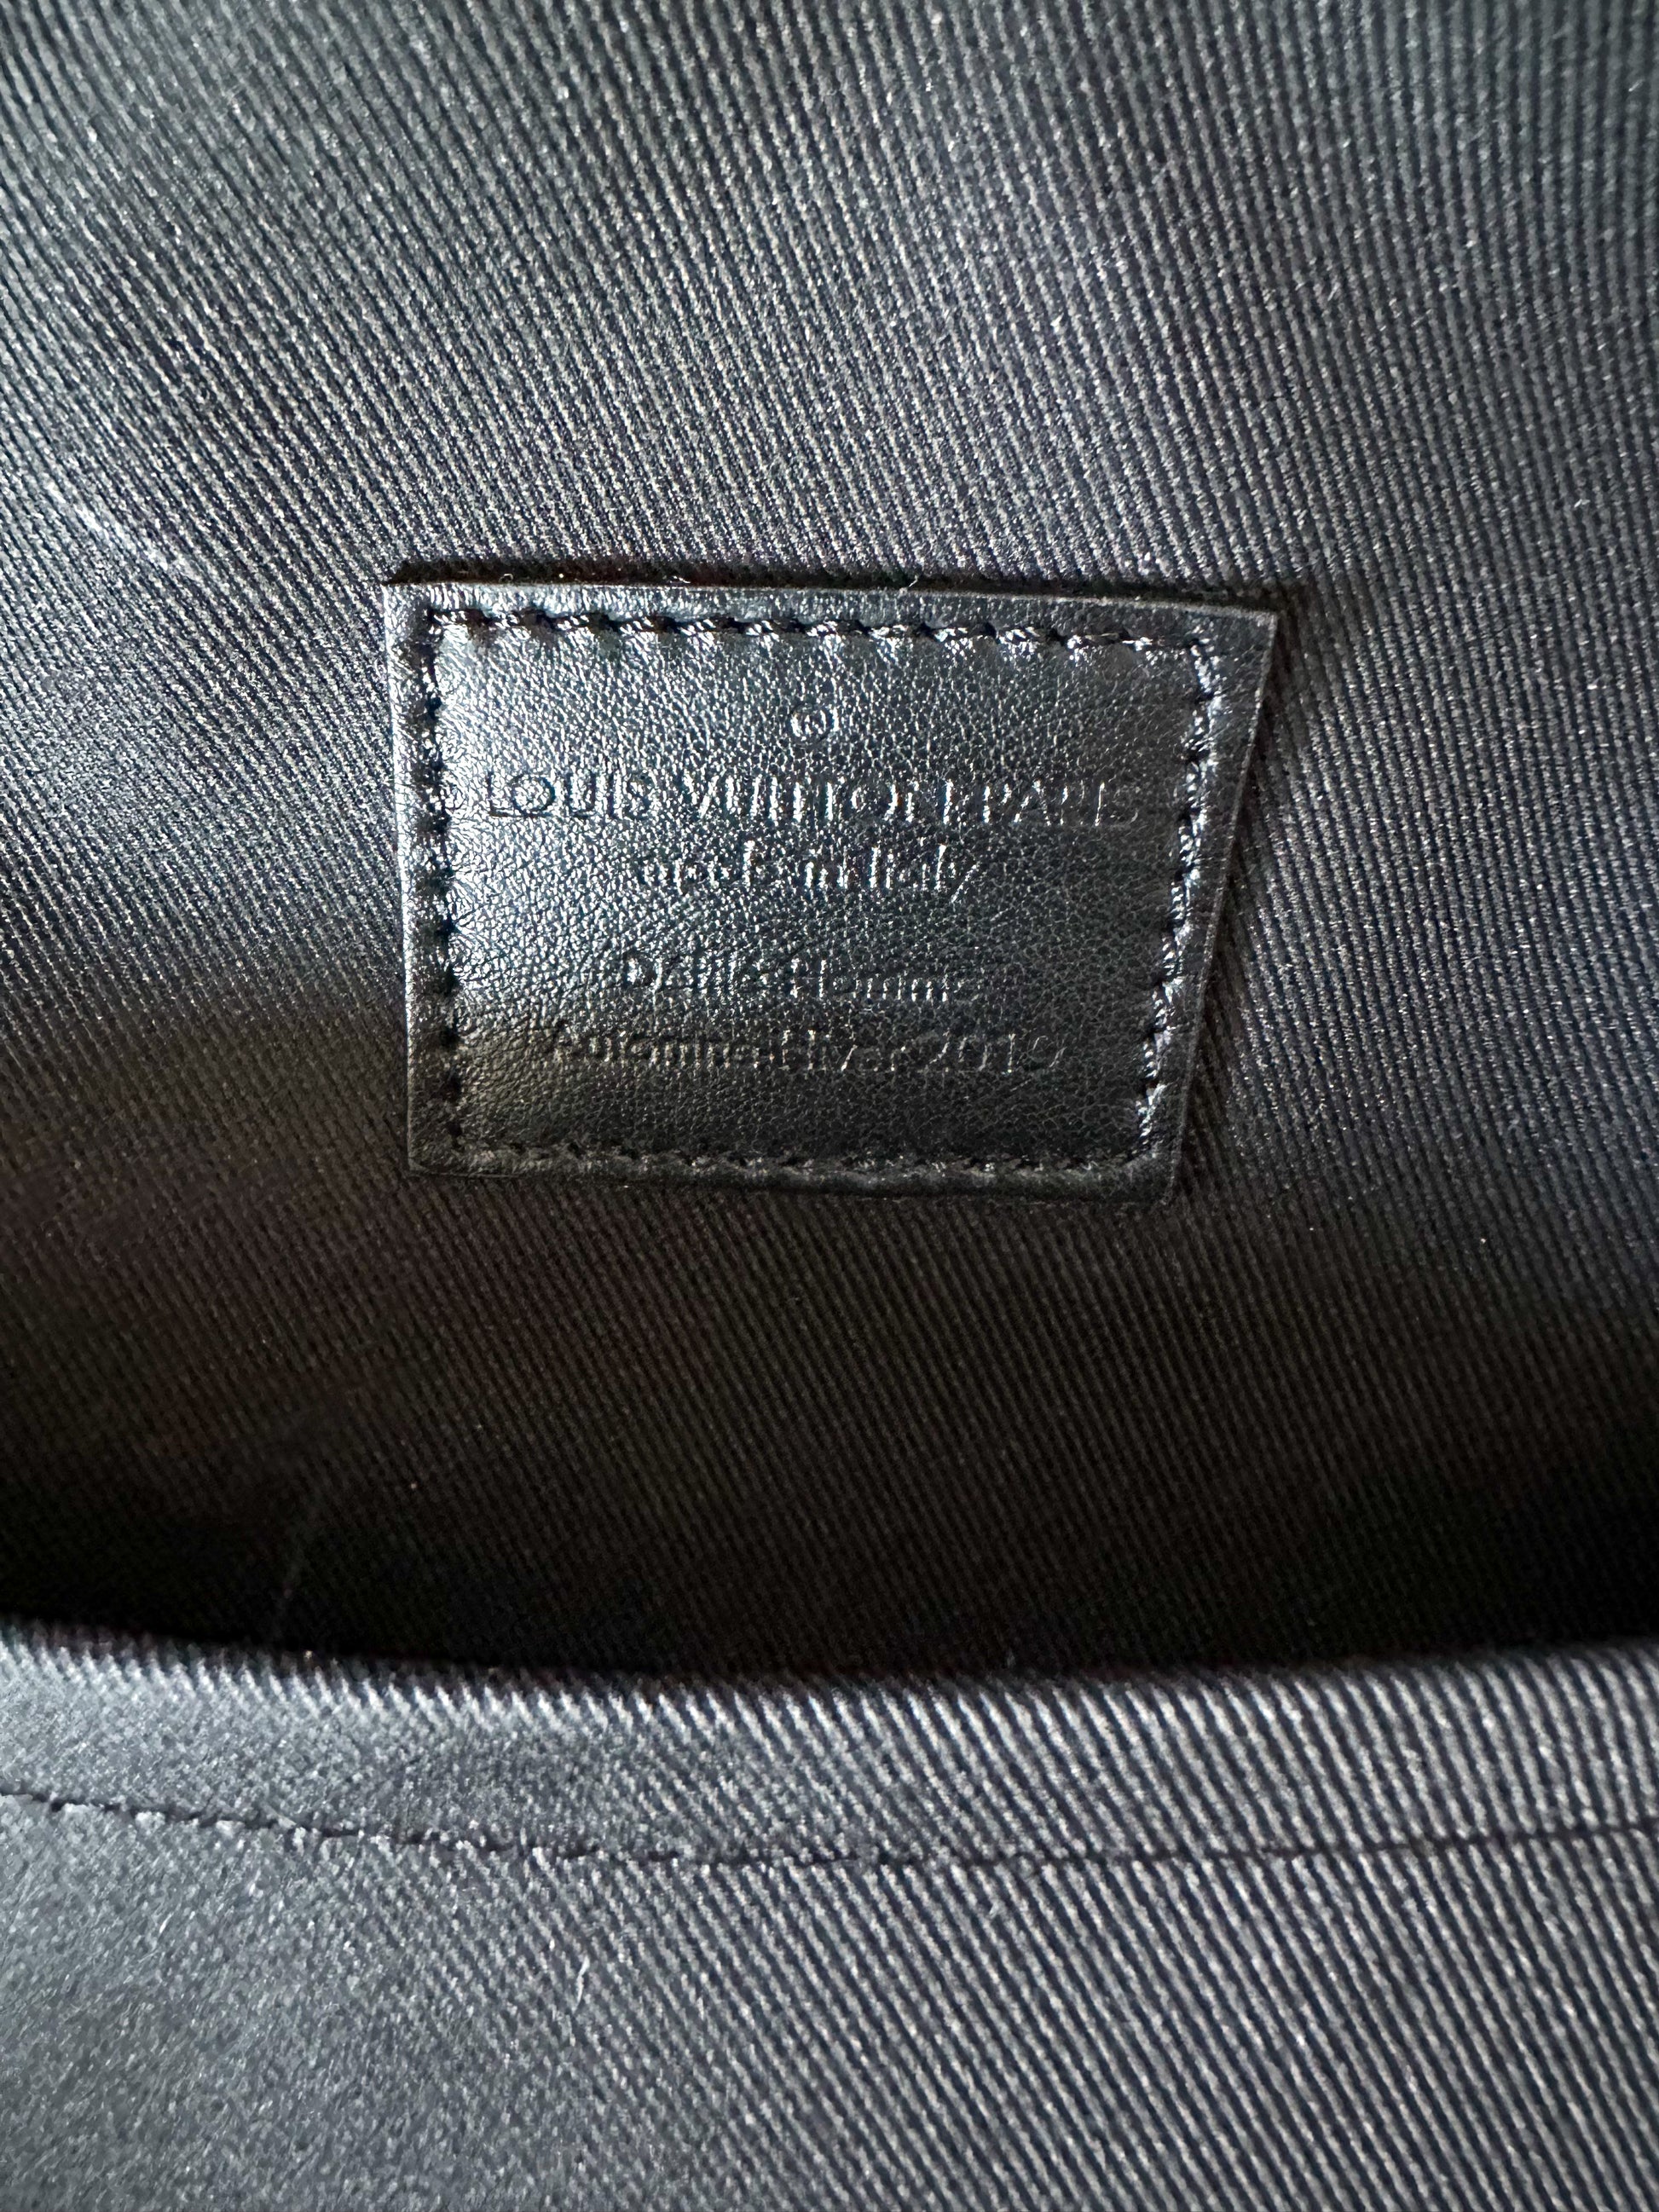 Louis Vuitton 1 Cap Embossed Monogram Leather Black in Taurillon